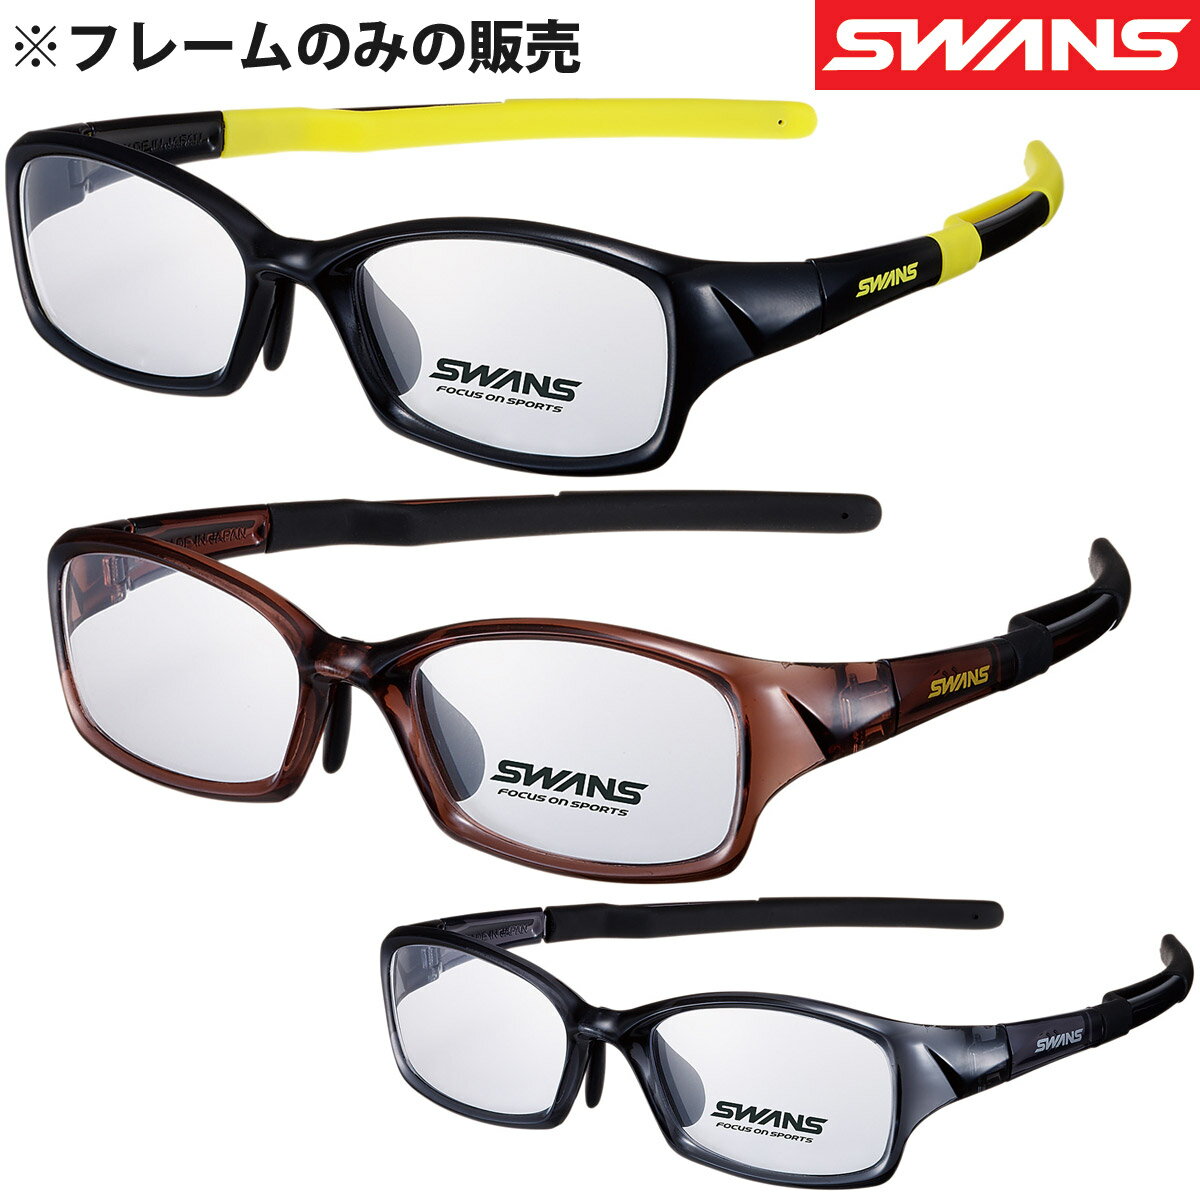 メガネフレーム ブランド メンズ おしゃれ スポーツメガネ 眼鏡フレームのみ おすすめ 人気 スワンズ SWANS 敬老の日…